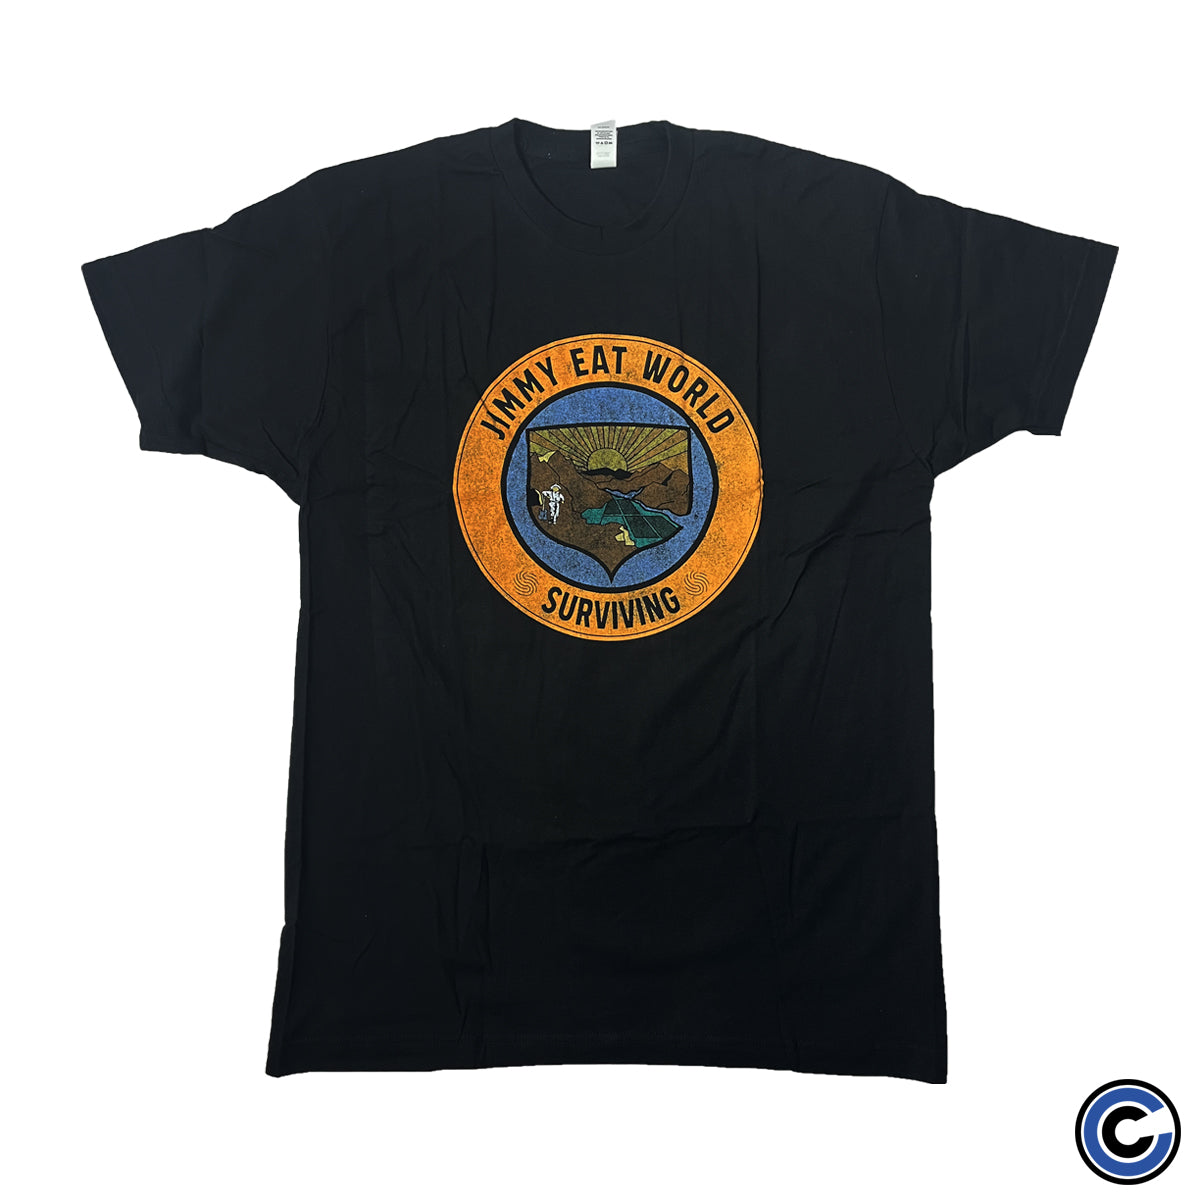 Jimmy Eat World "Surviving Crest" Shirt